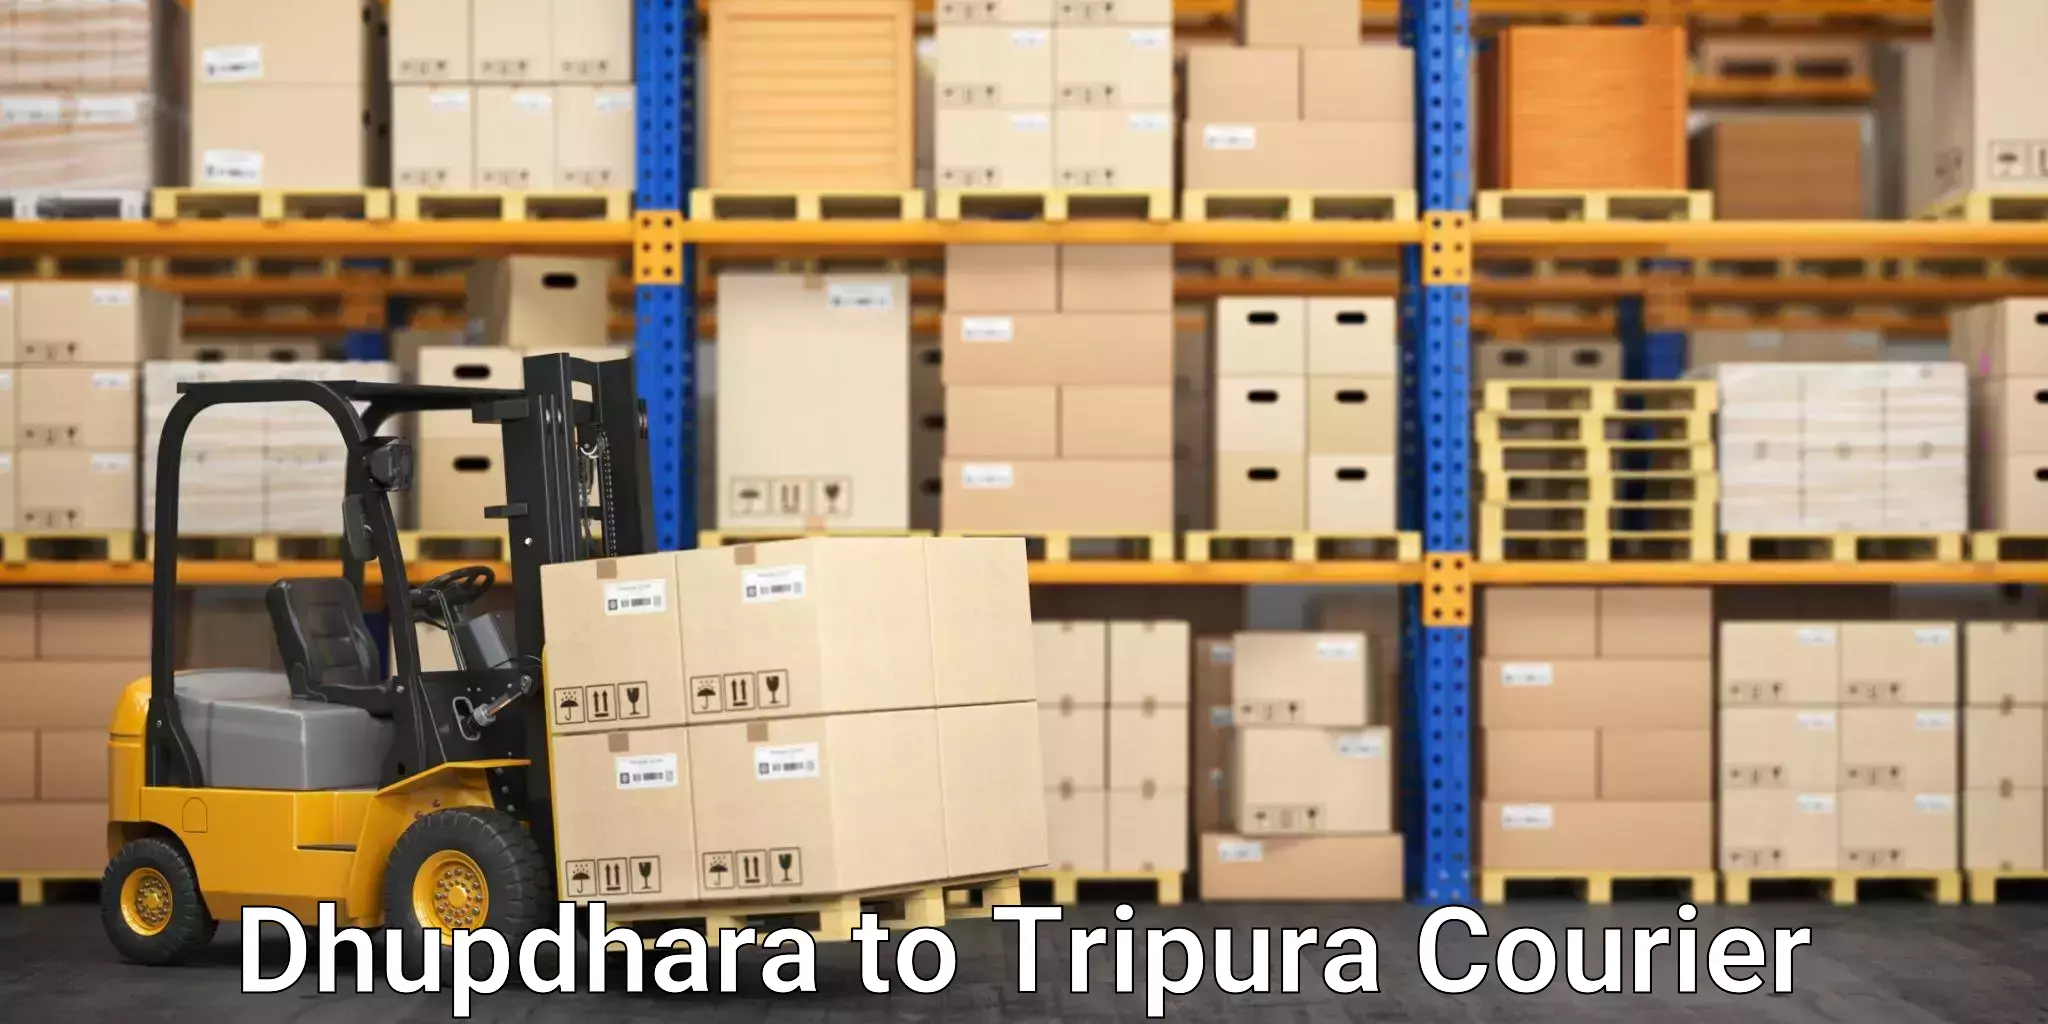 Express postal services Dhupdhara to Tripura